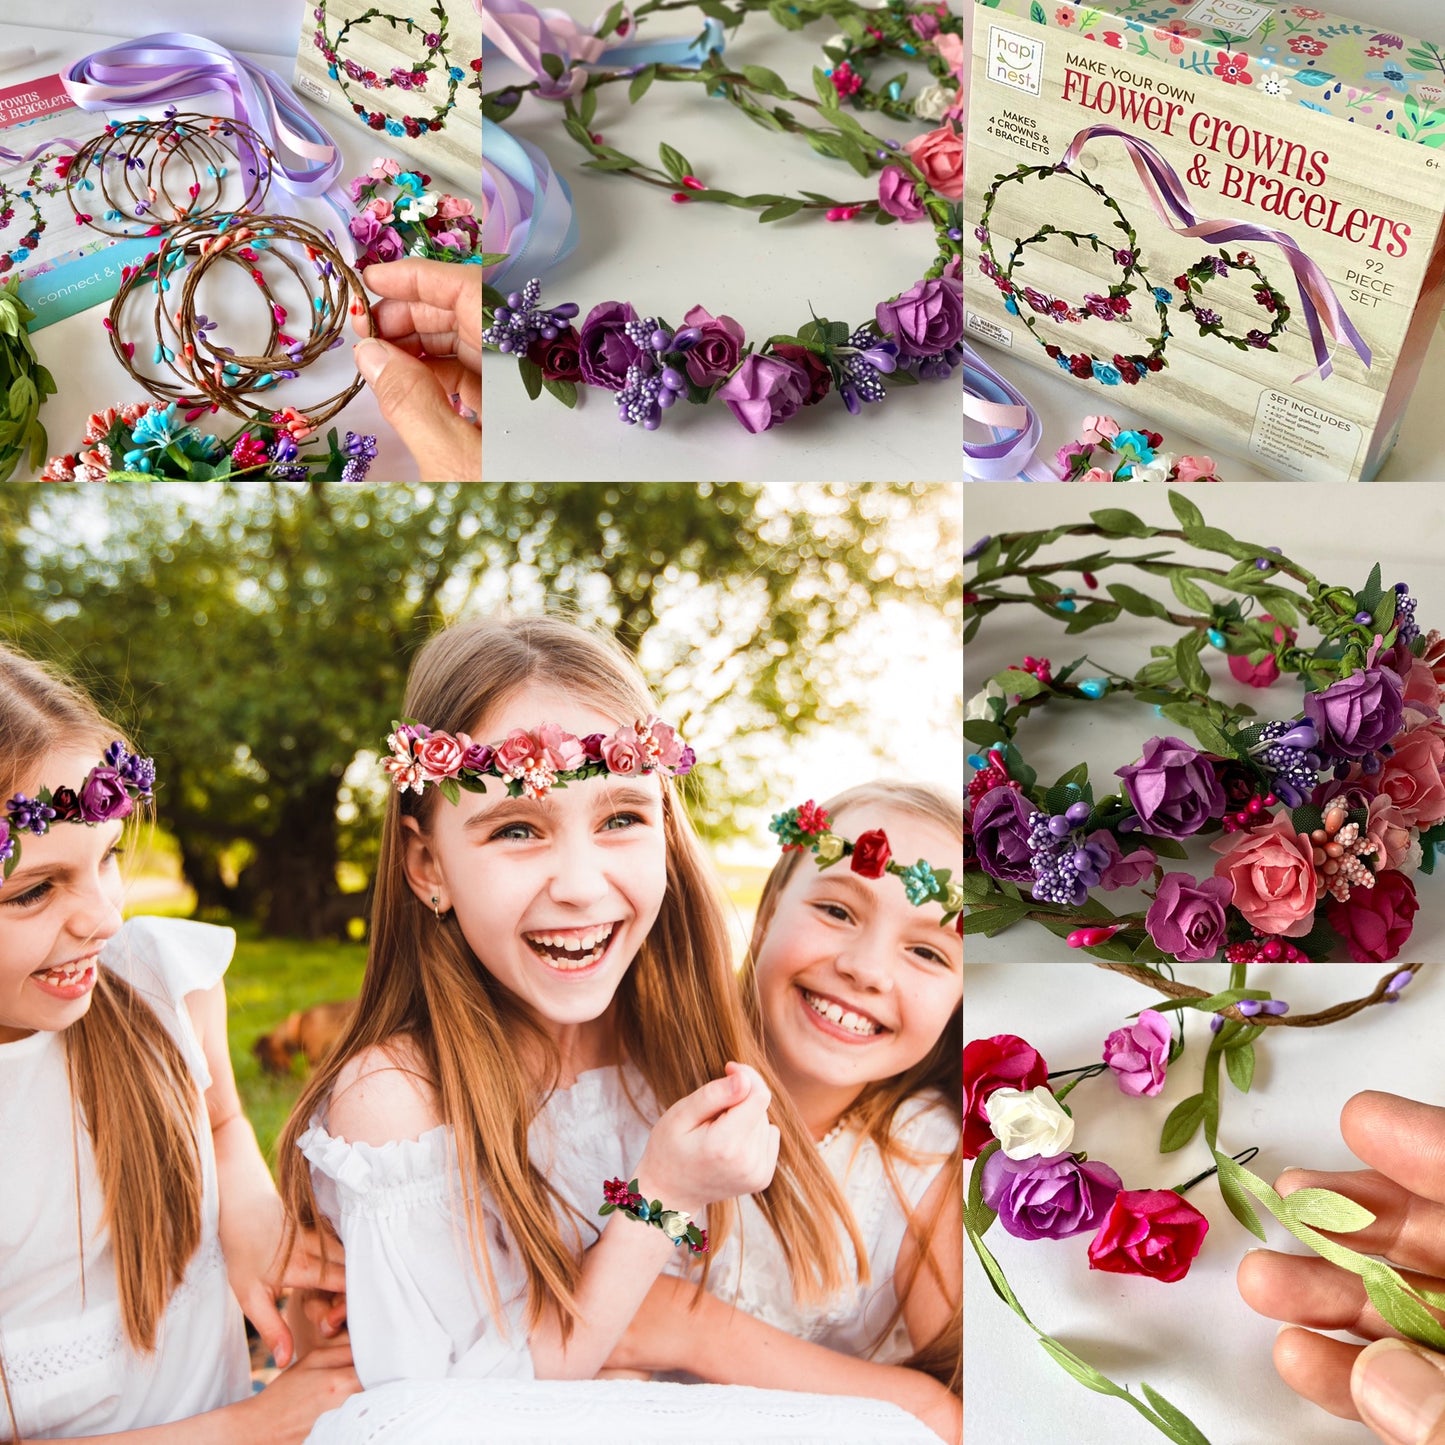 DIY Flower Crowns & Bracelets - Craft Kit